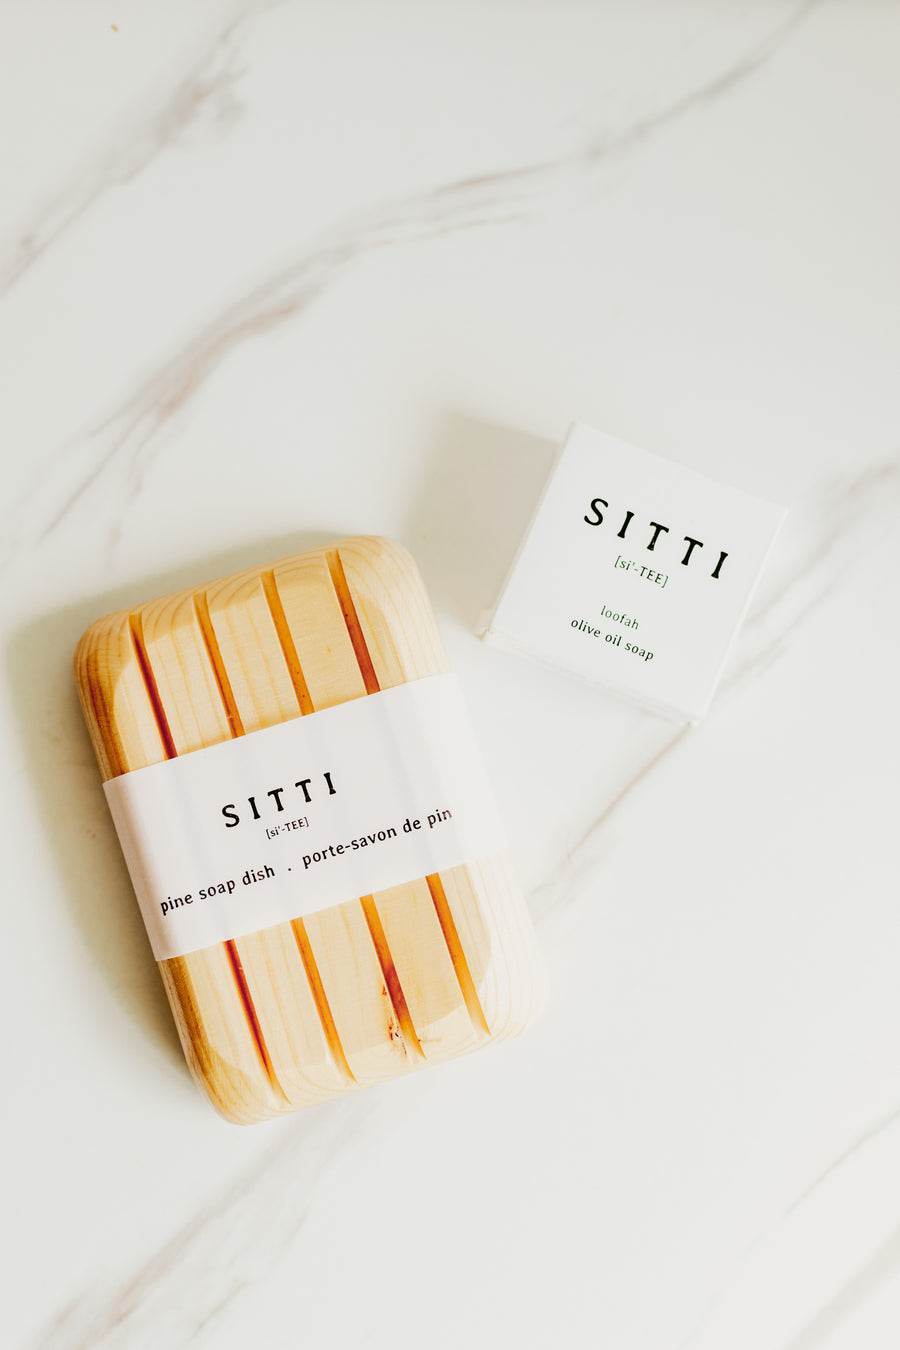 Dish + Sitti Soap Bar